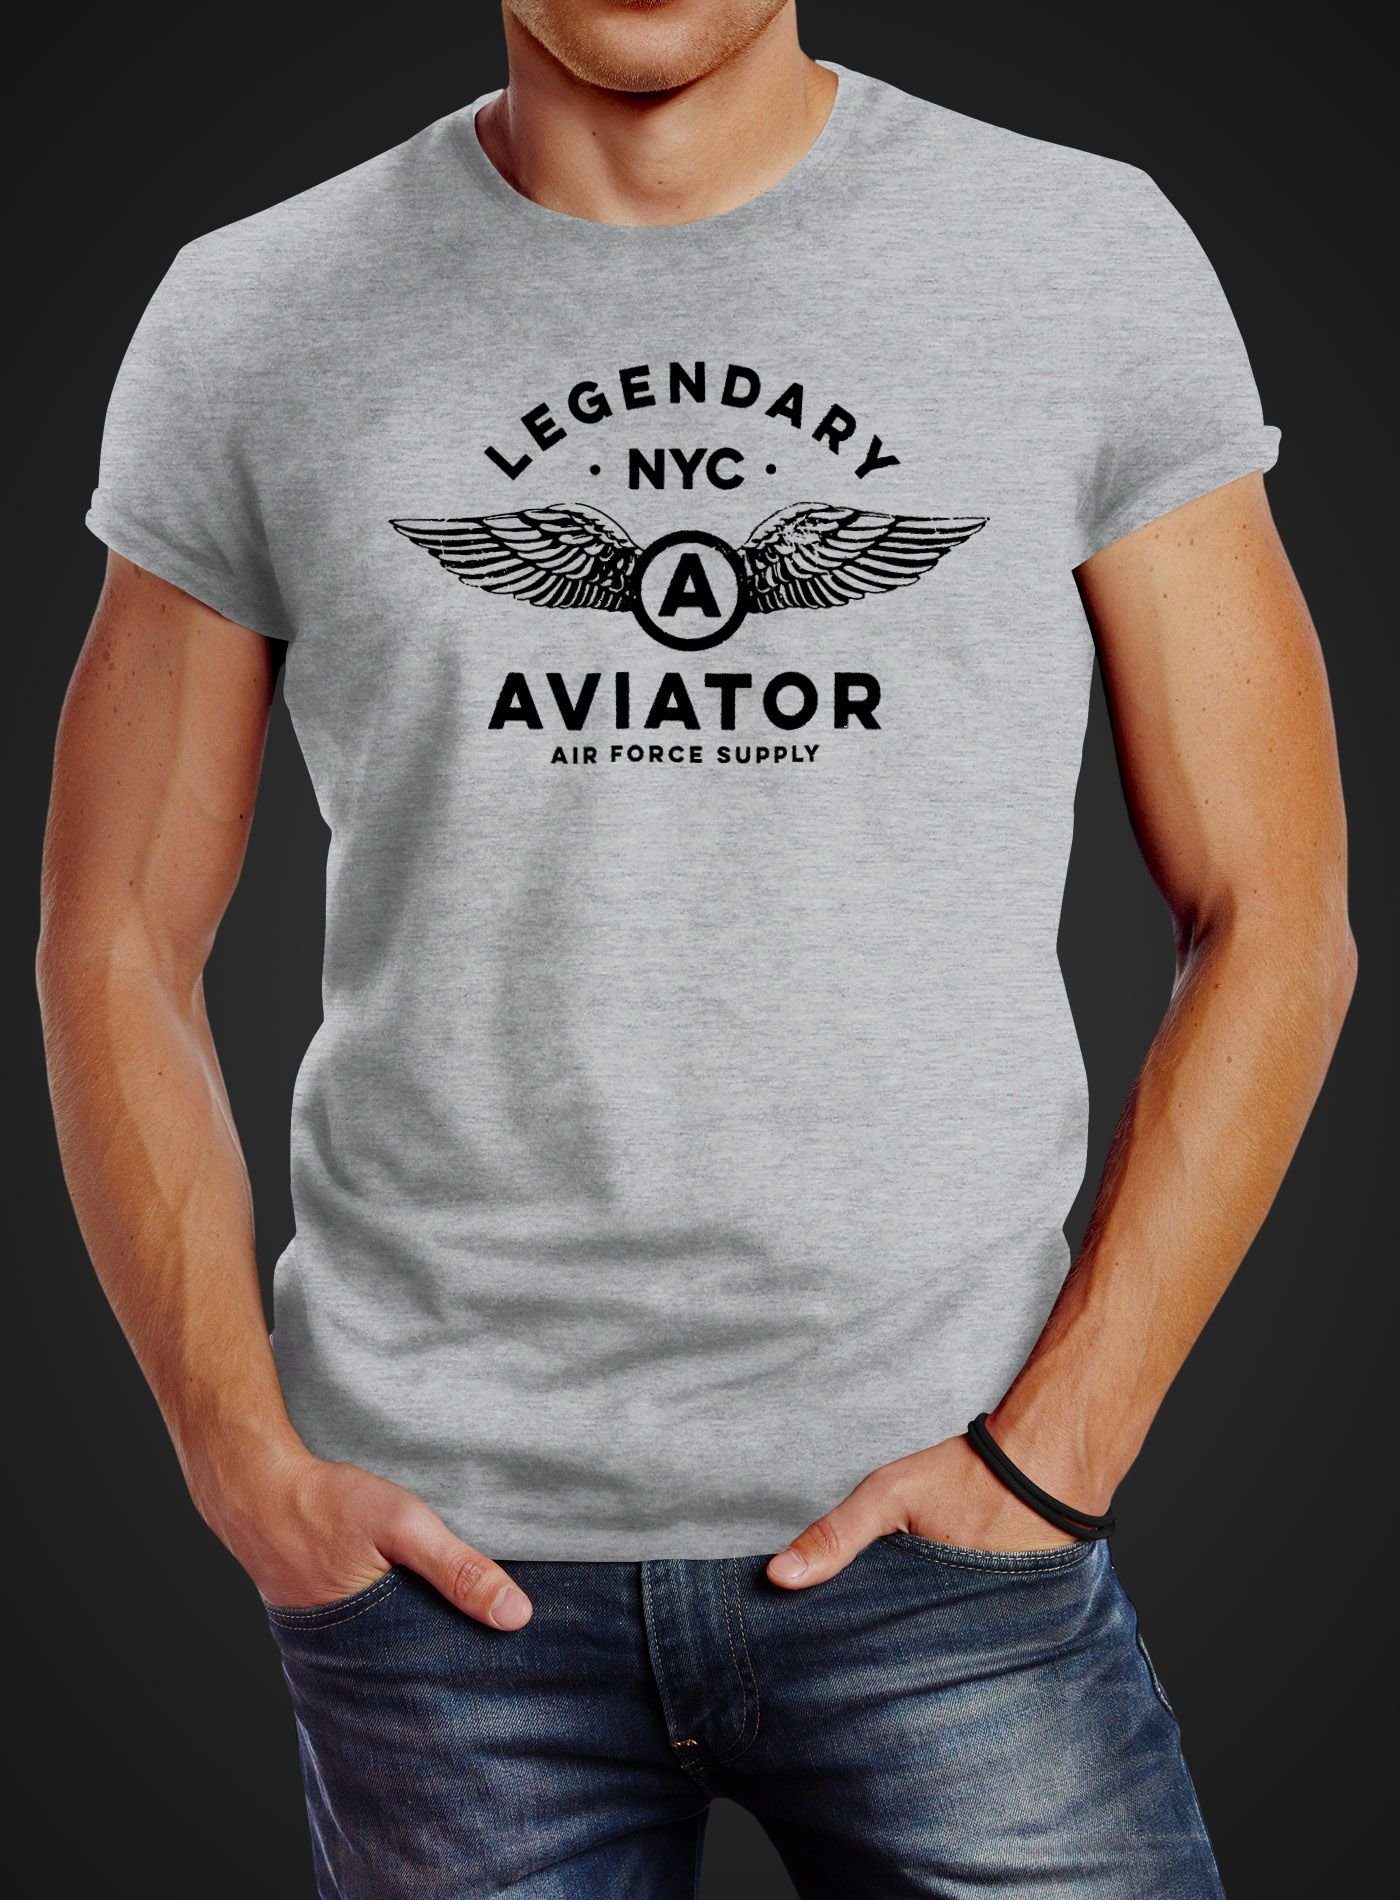 Neverless Print-Shirt Herren T-Shirt mit Fashion Luftwaffe Streetstyle Air Neverless® Aviator Legendary Print NYC Force grau Flügel